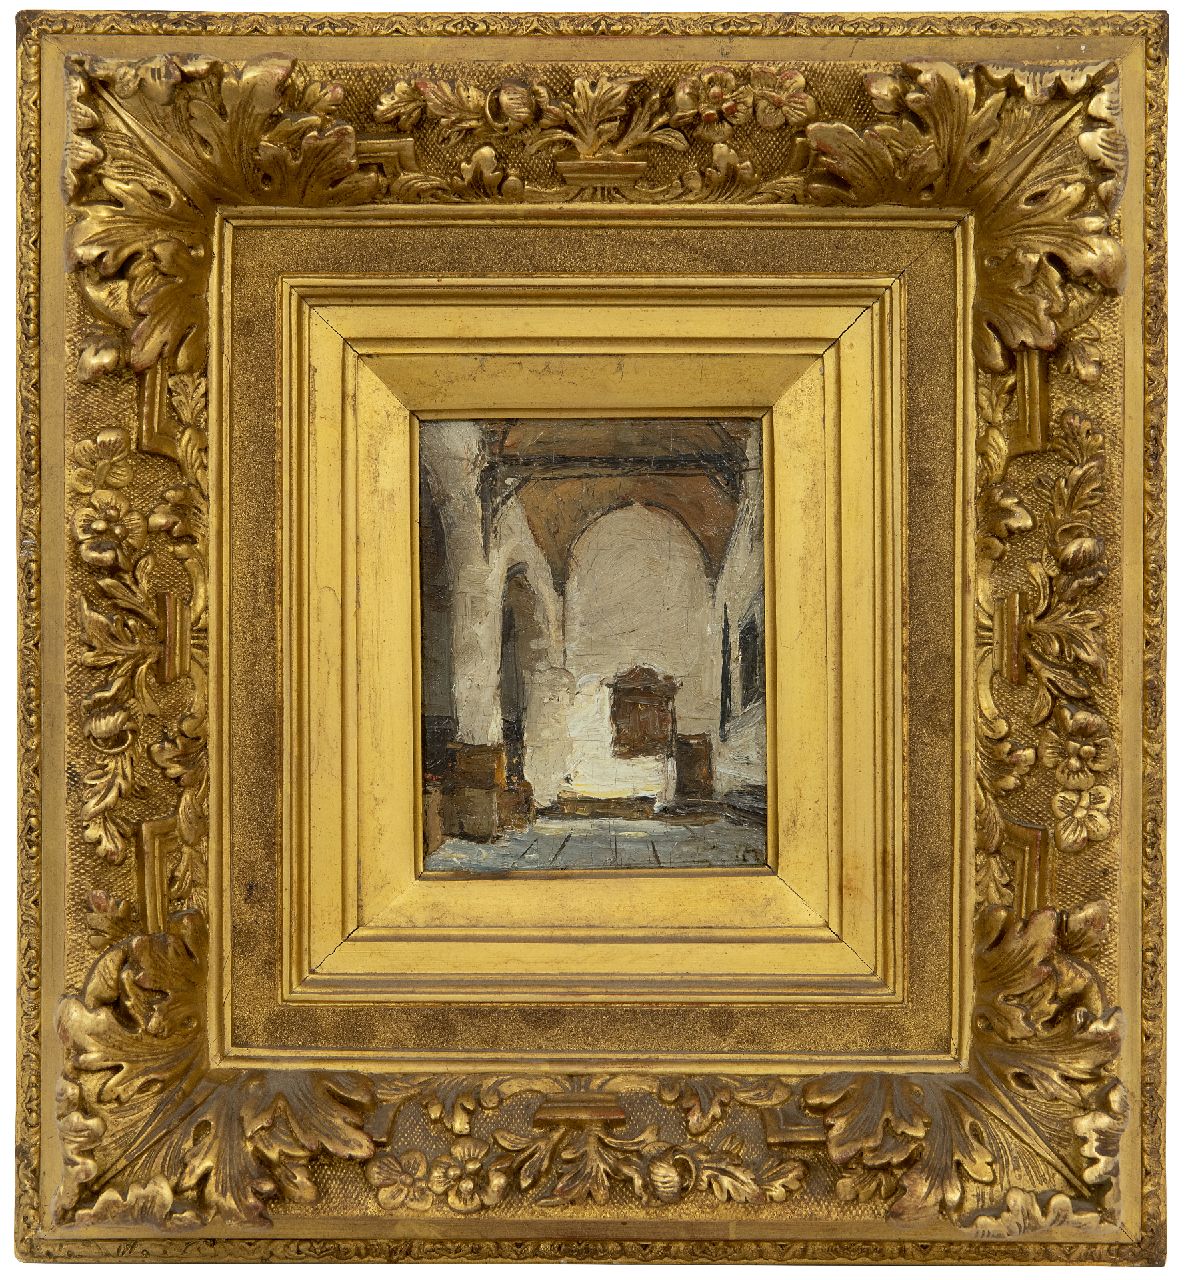 Bosboom J.  | Johannes Bosboom, Kerkinterieur, olieverf op paneel 12,0 x 9,1 cm, gesigneerd rechtsonder met initialen